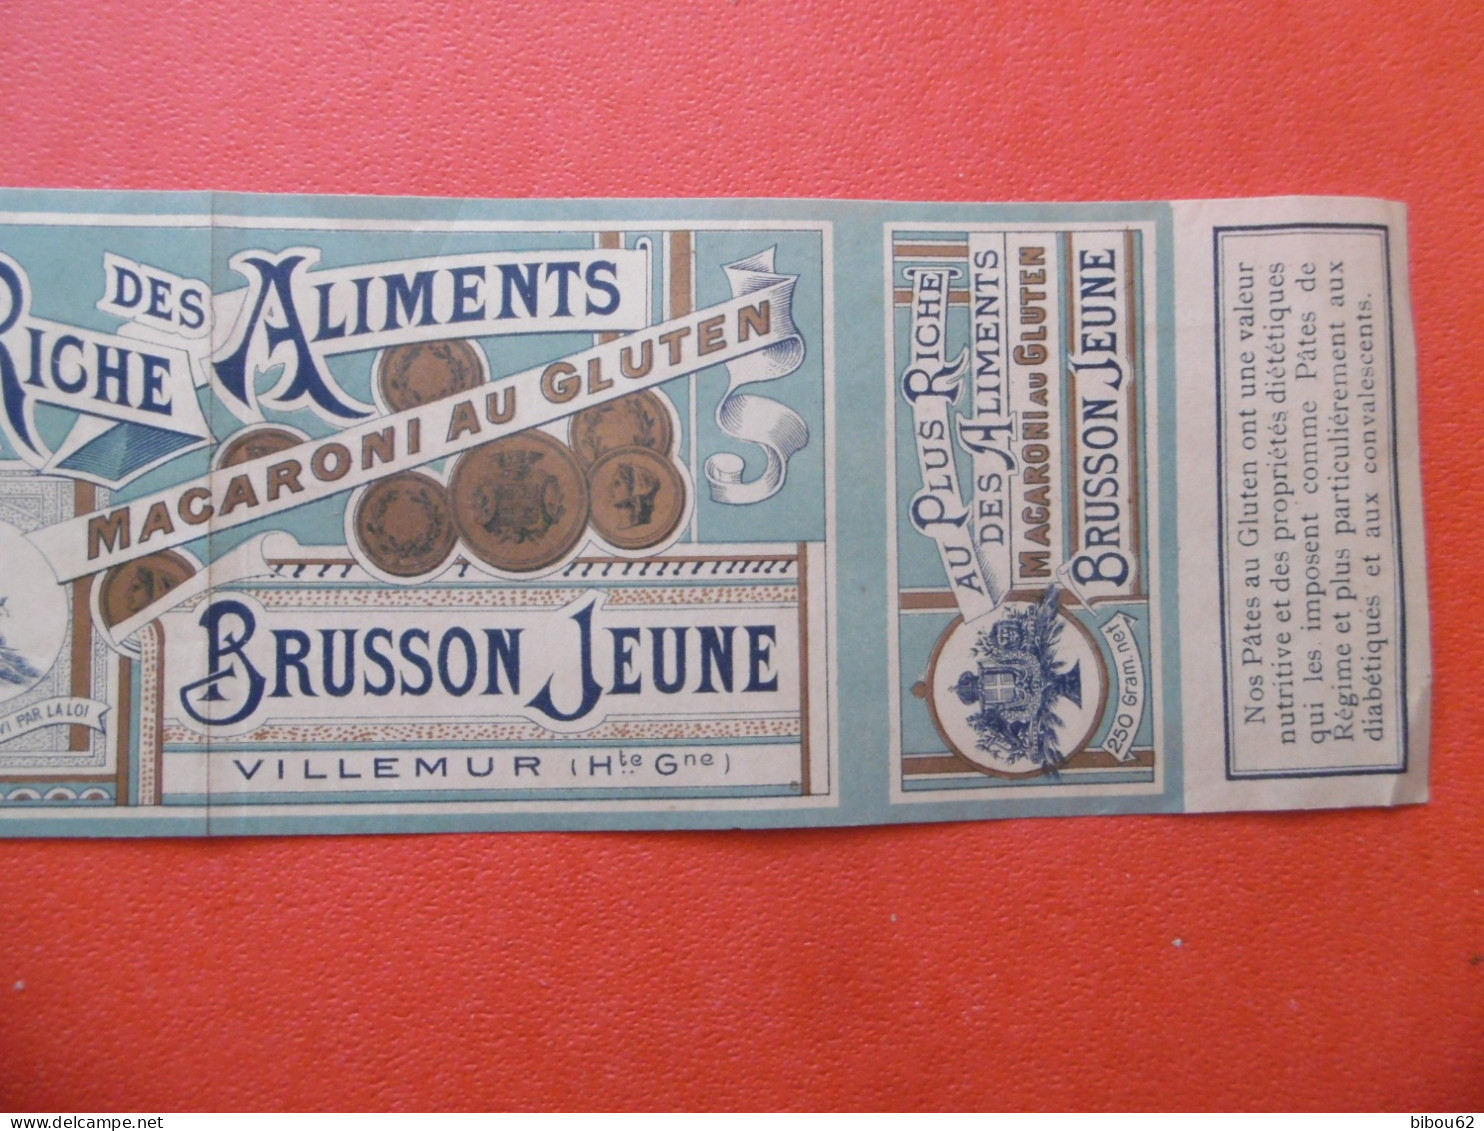 VILLEMUR  ( 31 ) Bande Publicitaire D'habillage De Boite - BRUSSON  Jeune - Macaroni Au Gluten - 1900 - Alimentaire